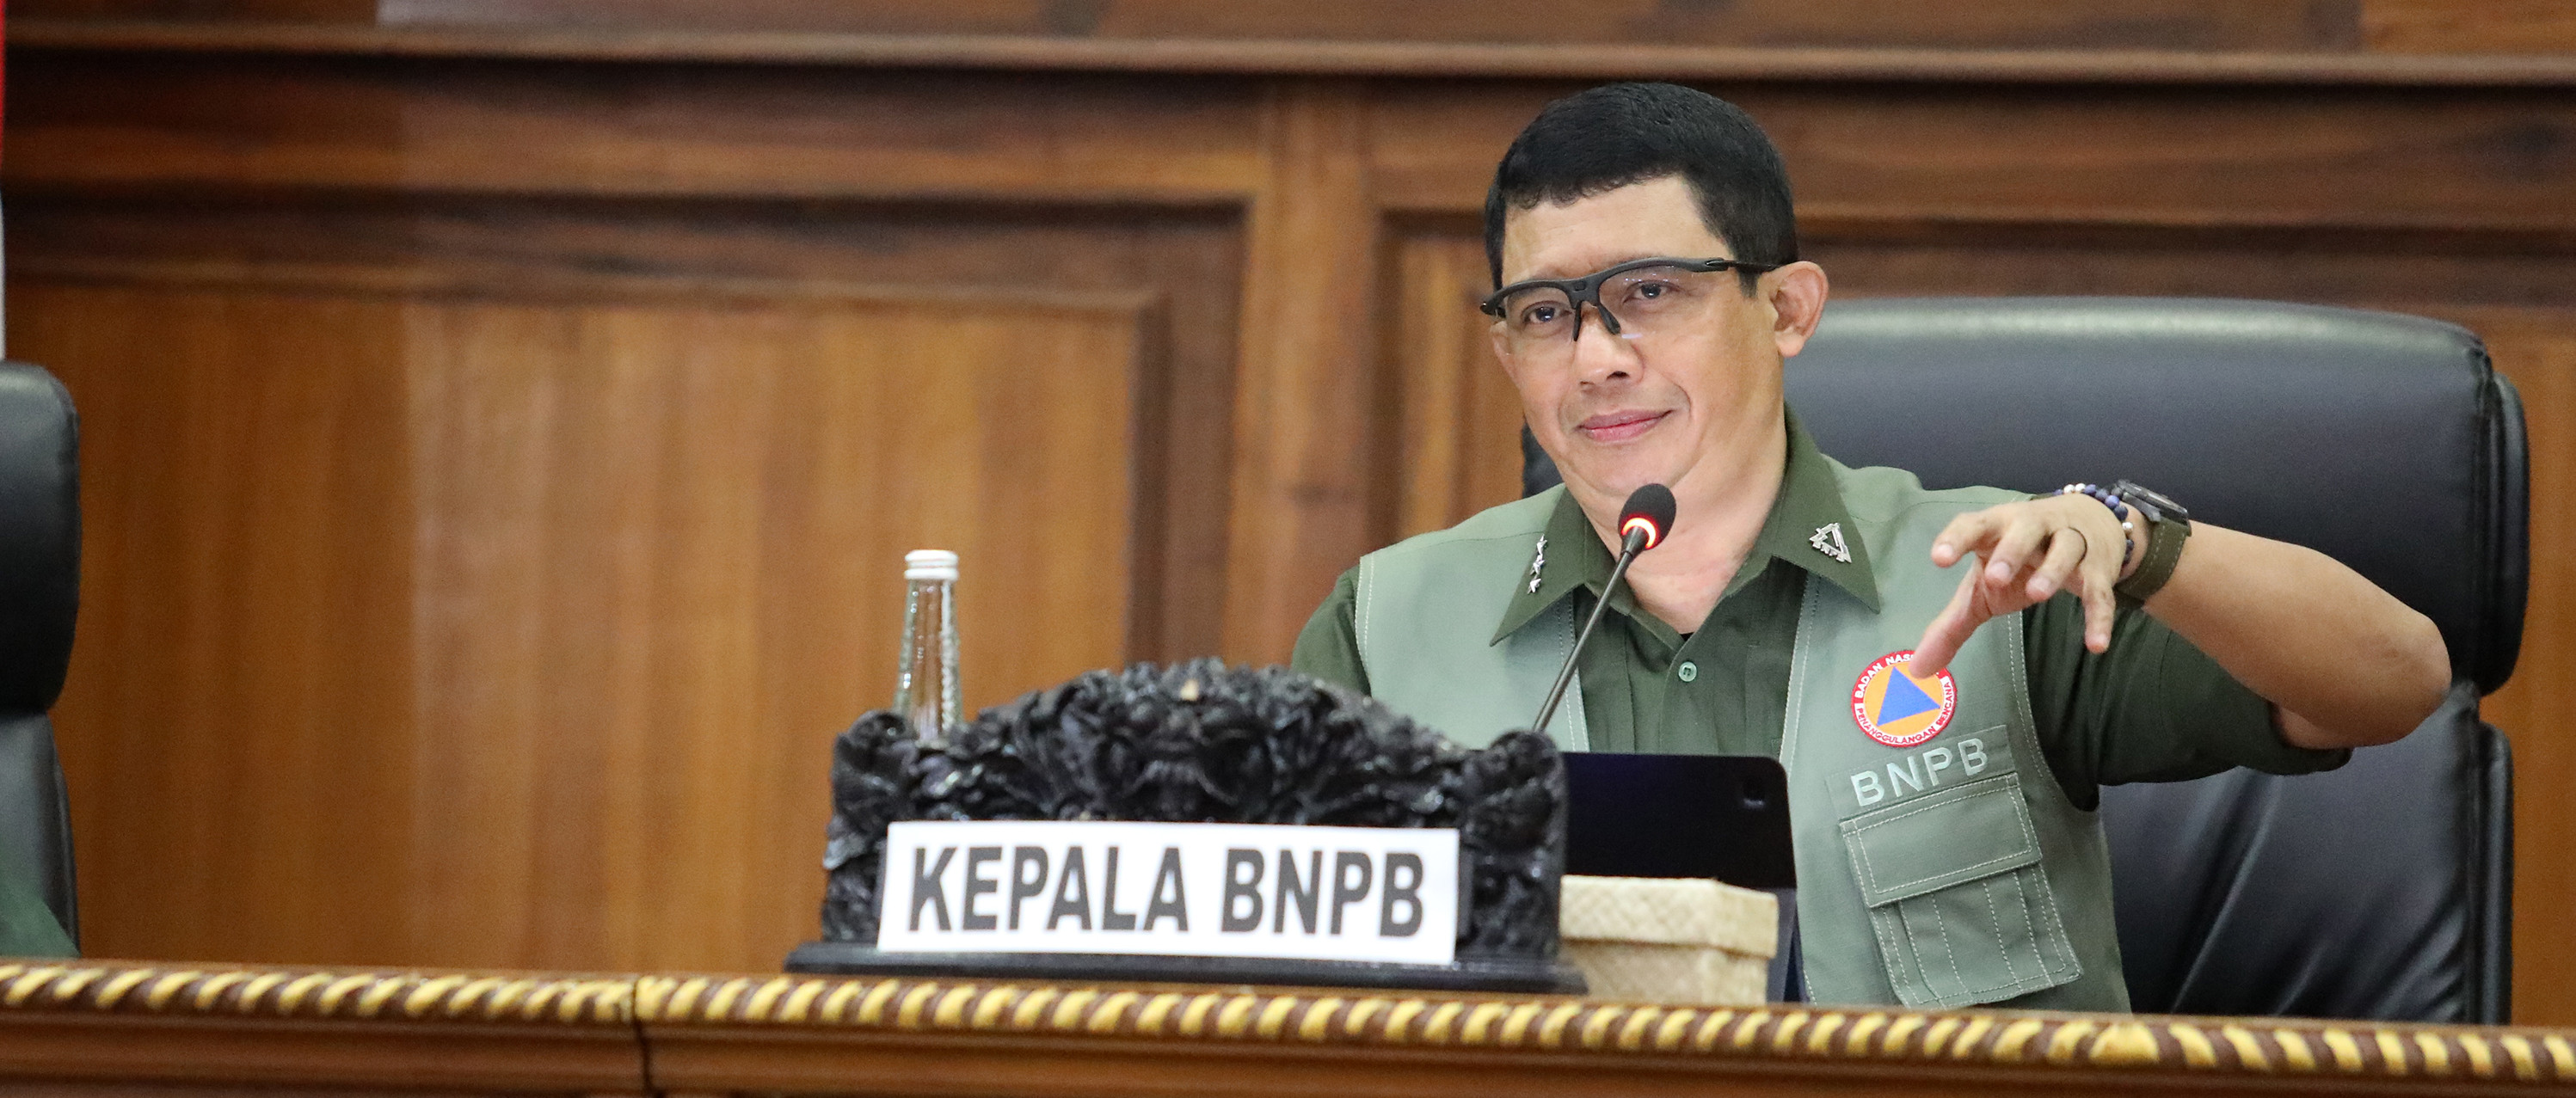 Kepala BNPB Pimpin Rakor Kekeringan Dan Karhutla Di Bali